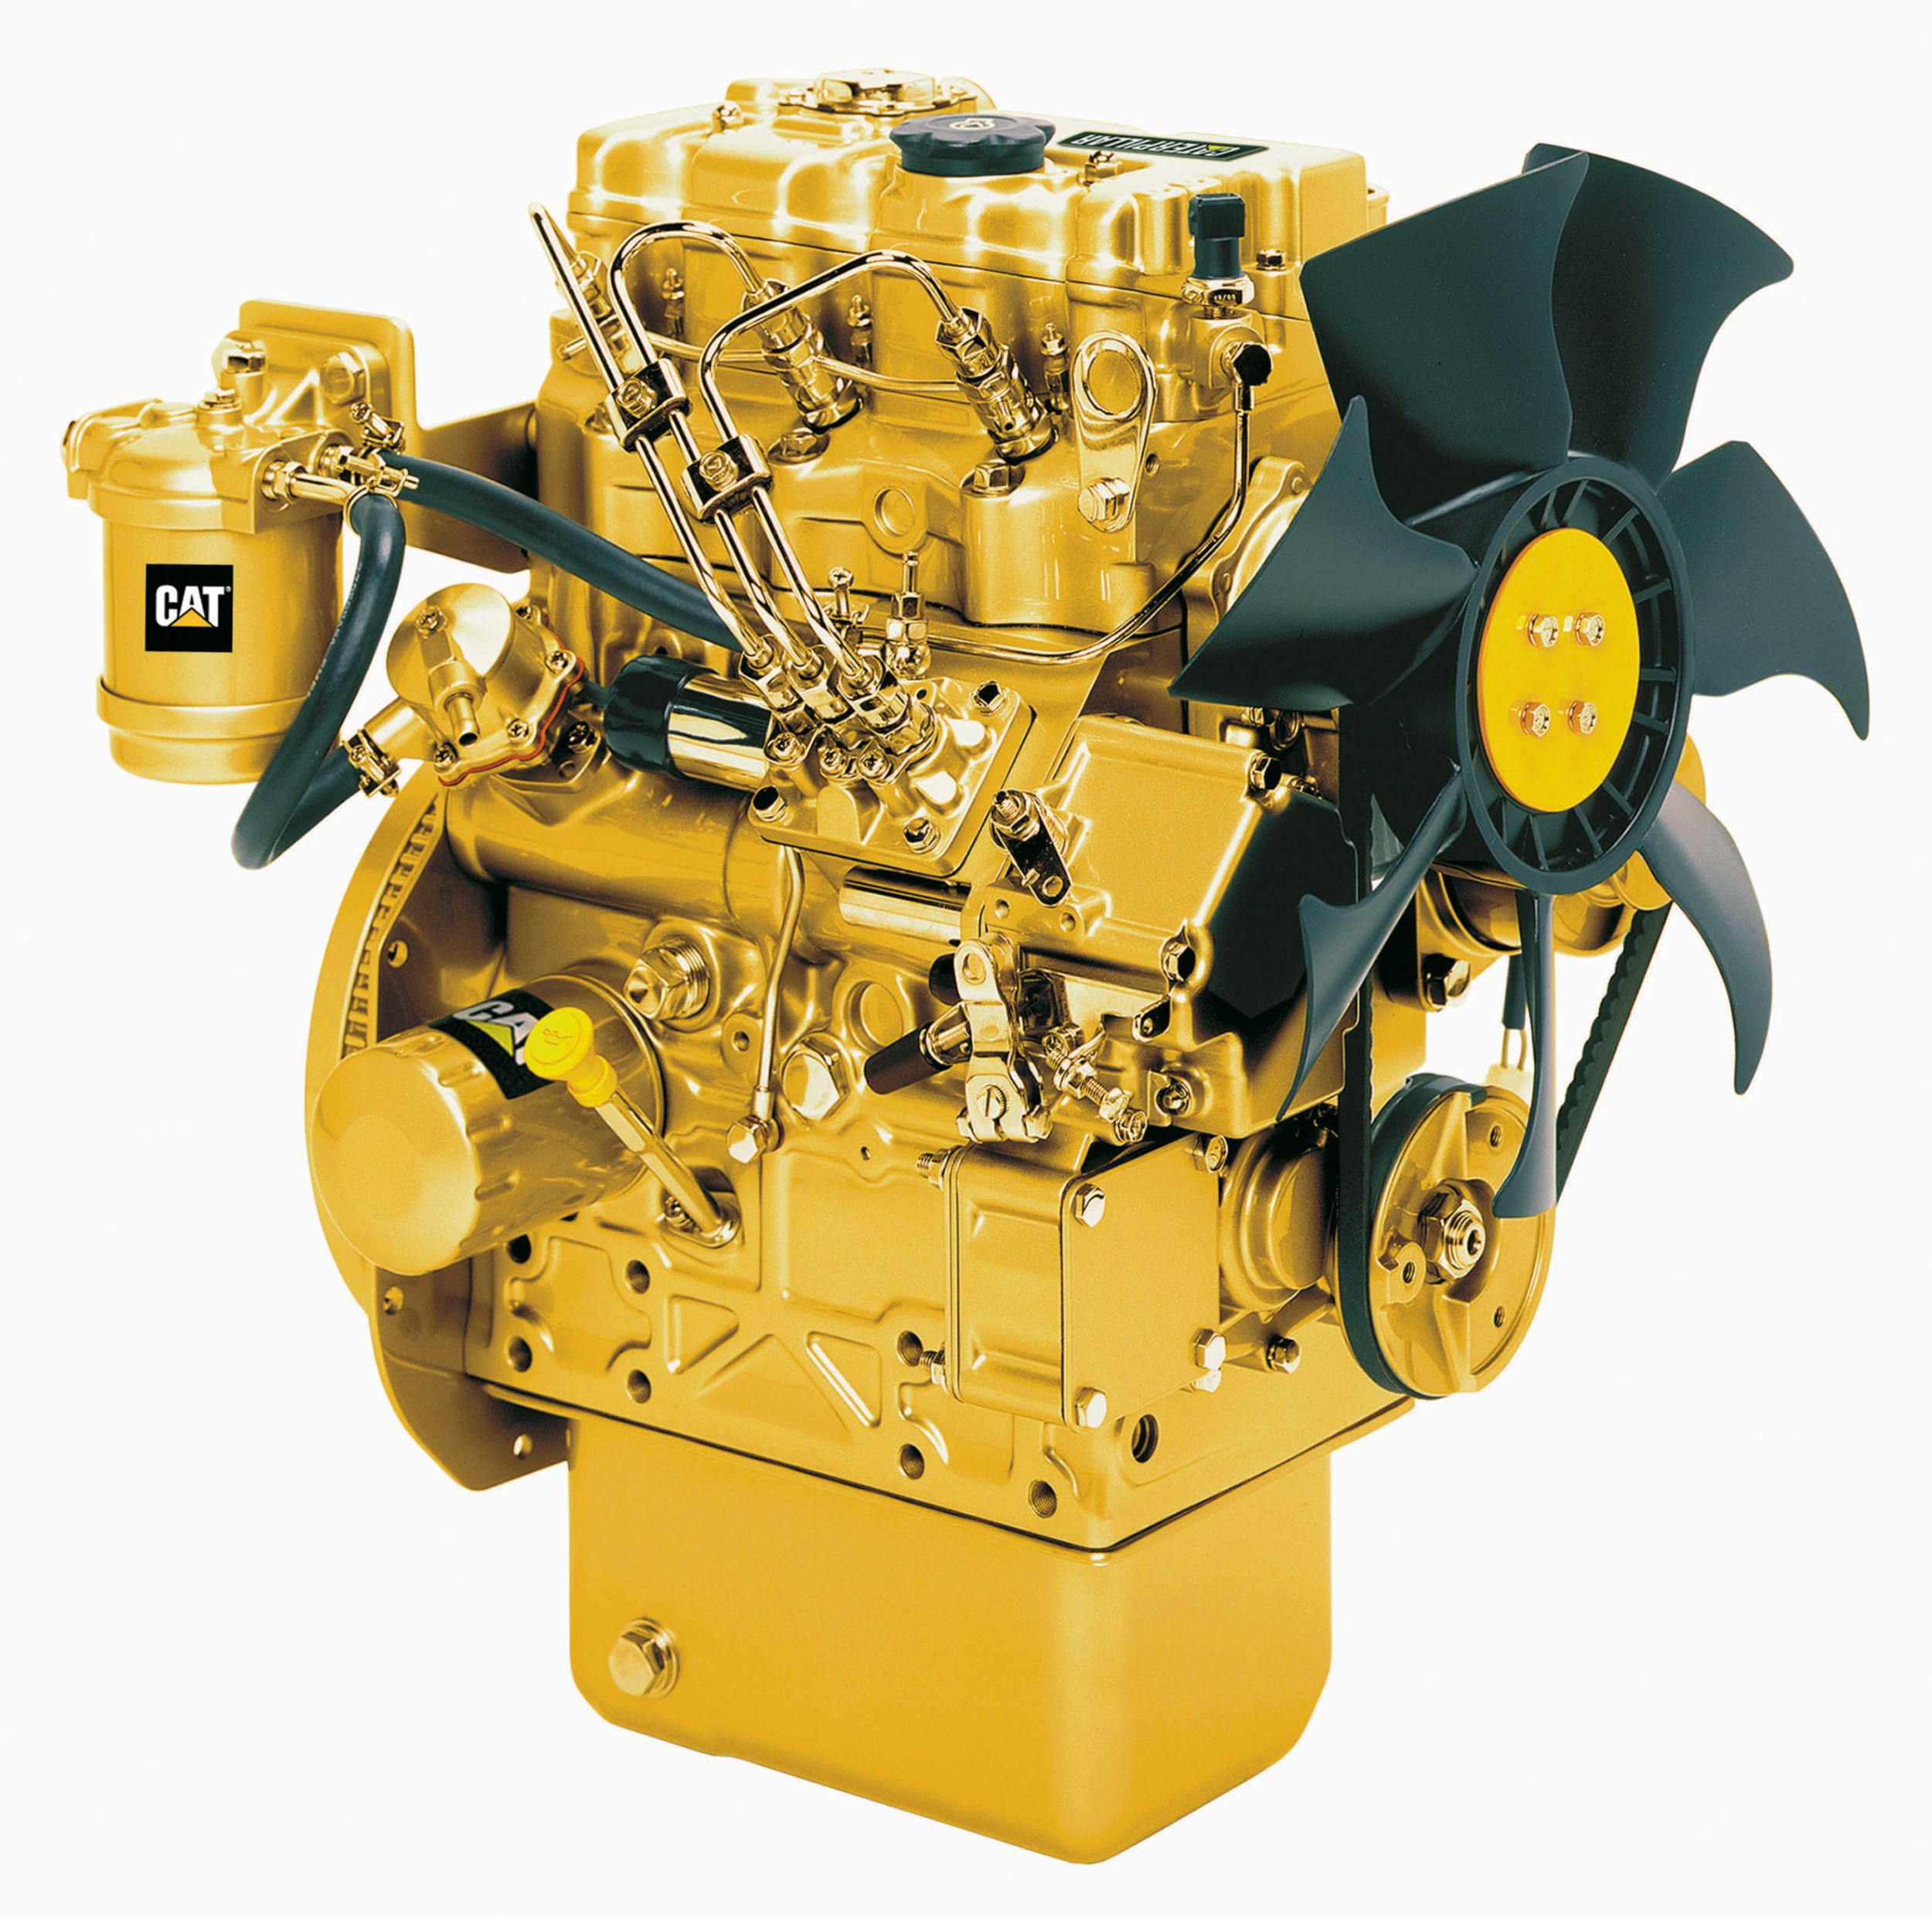 Cat® C1.1 Diesel Engine